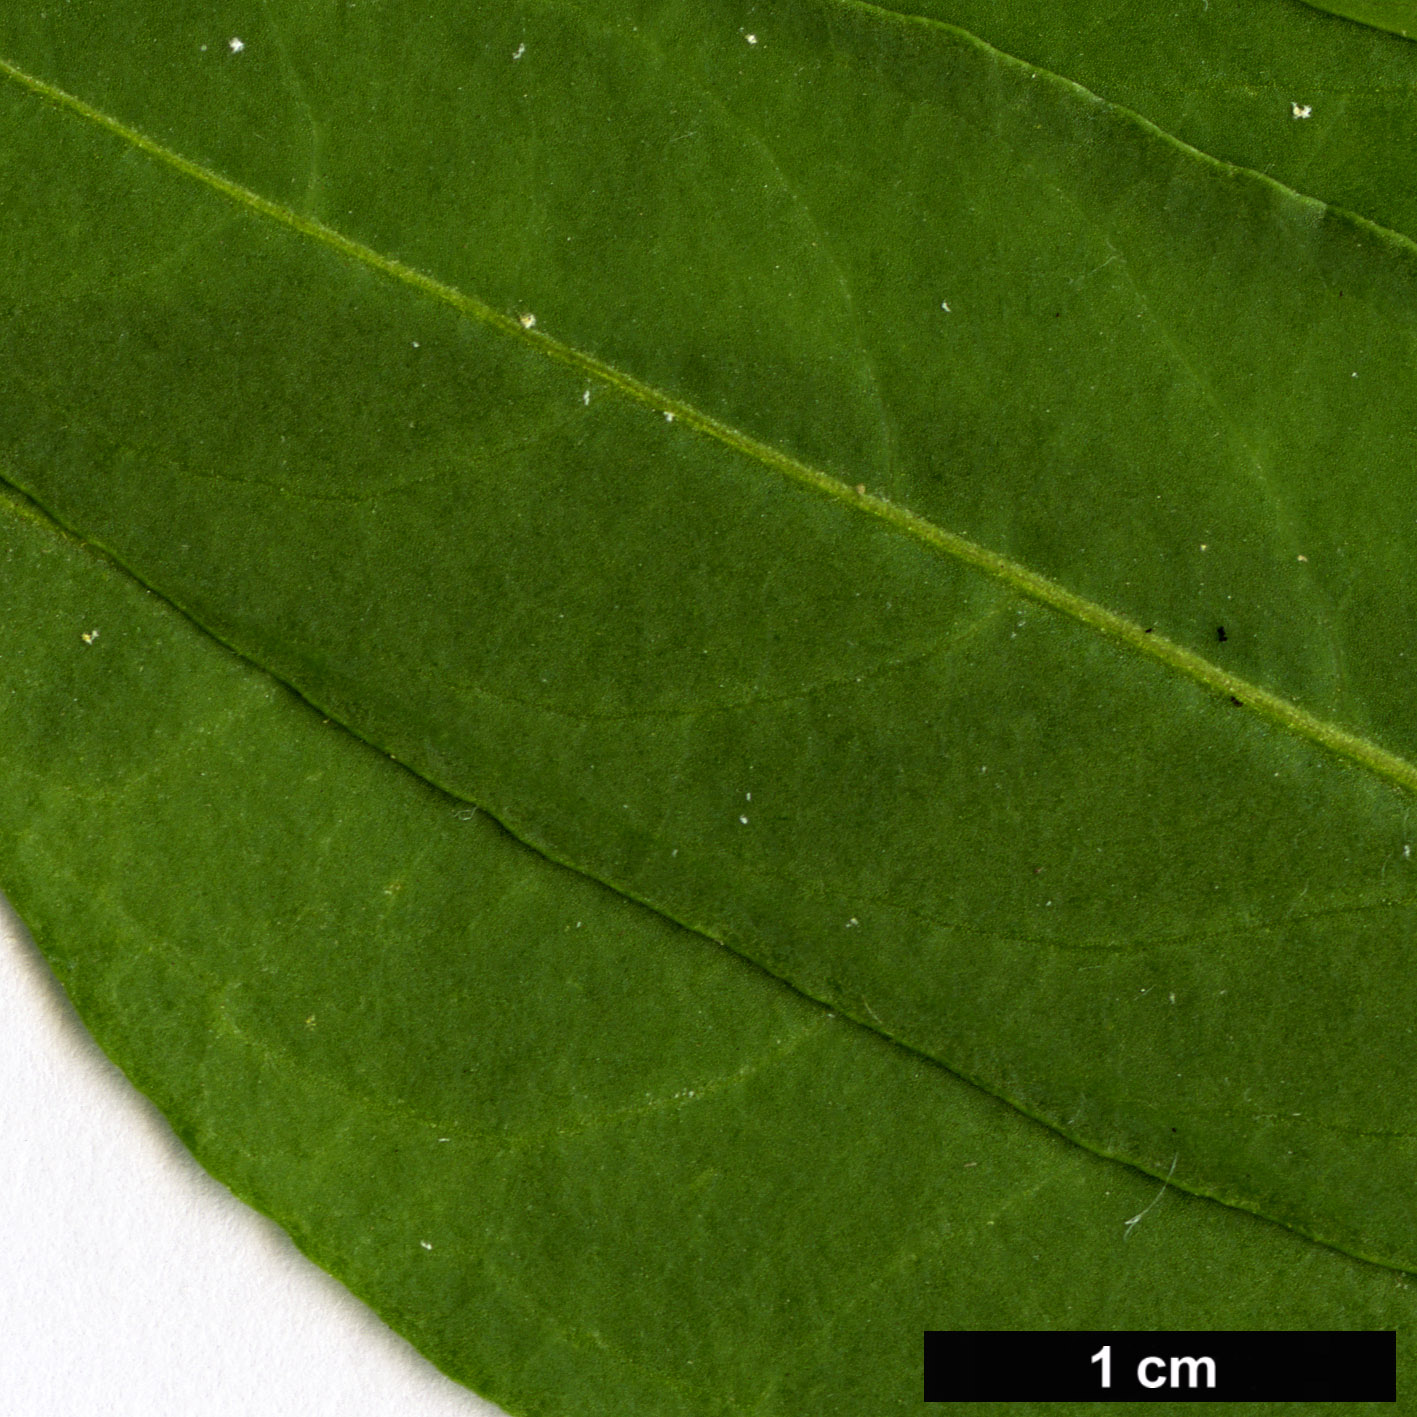 High resolution image: Family: Solanaceae - Genus: Cestrum - Taxon: parqui